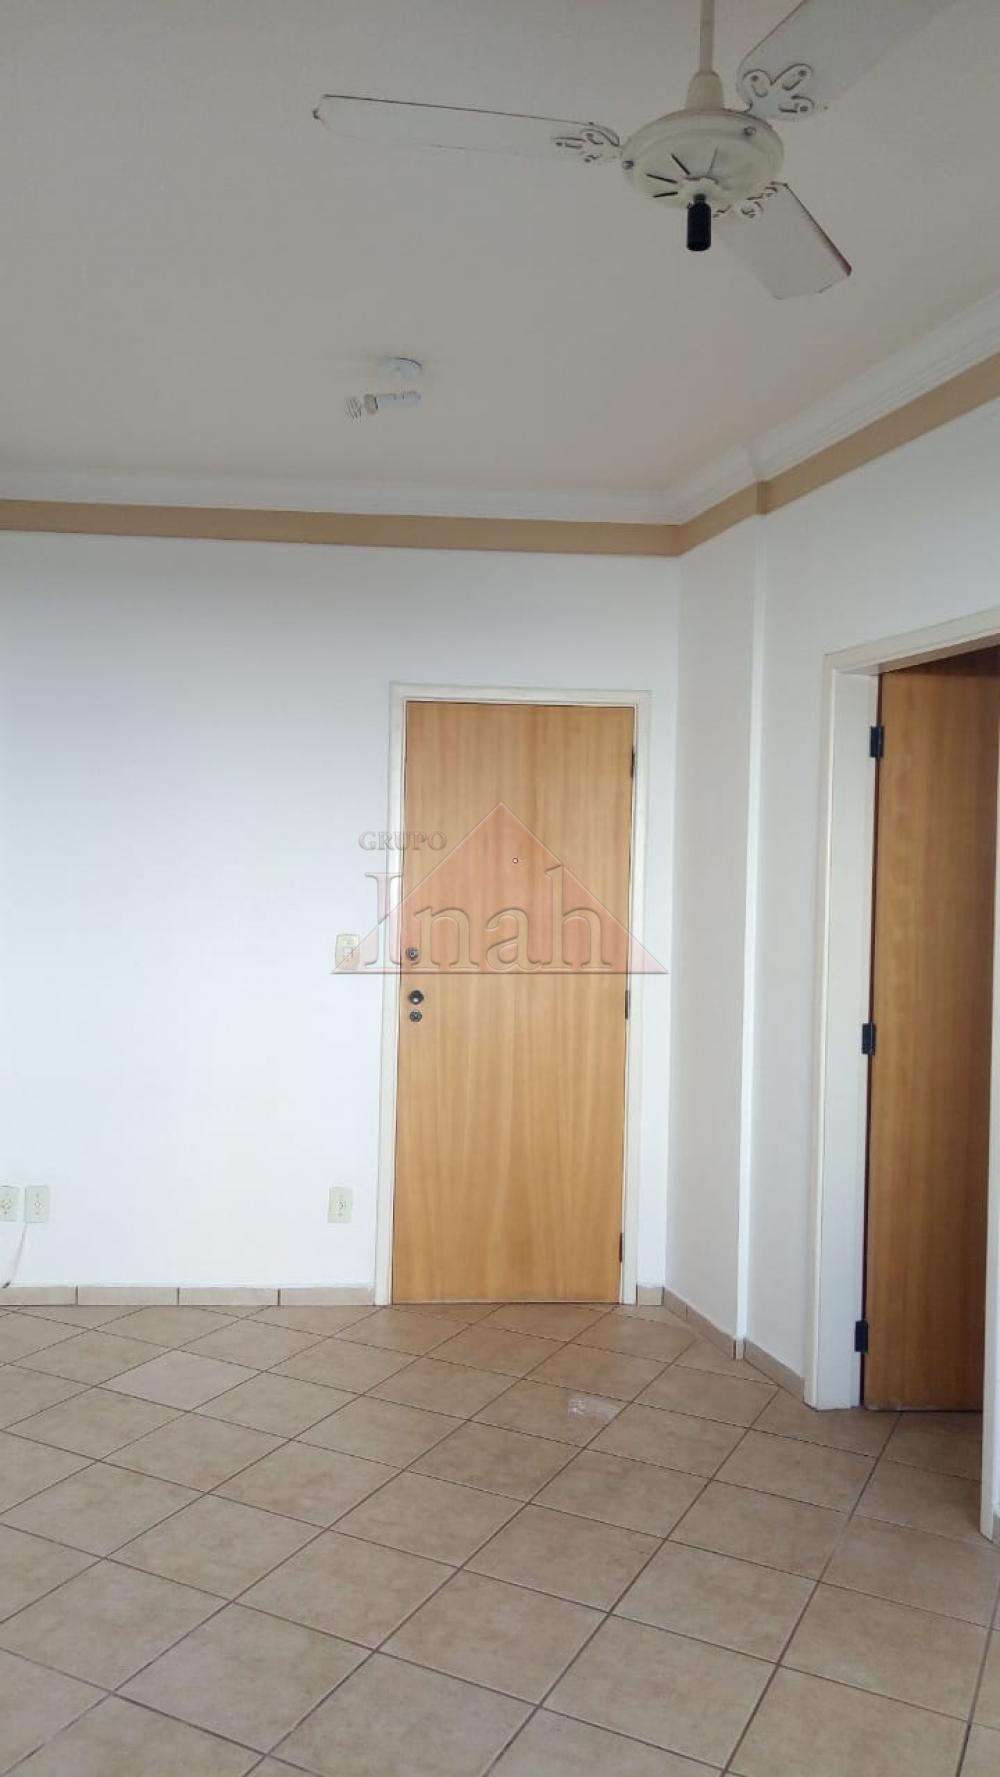 Alugar Apartamentos / Apartamento em Ribeirão Preto R$ 900,00 - Foto 2